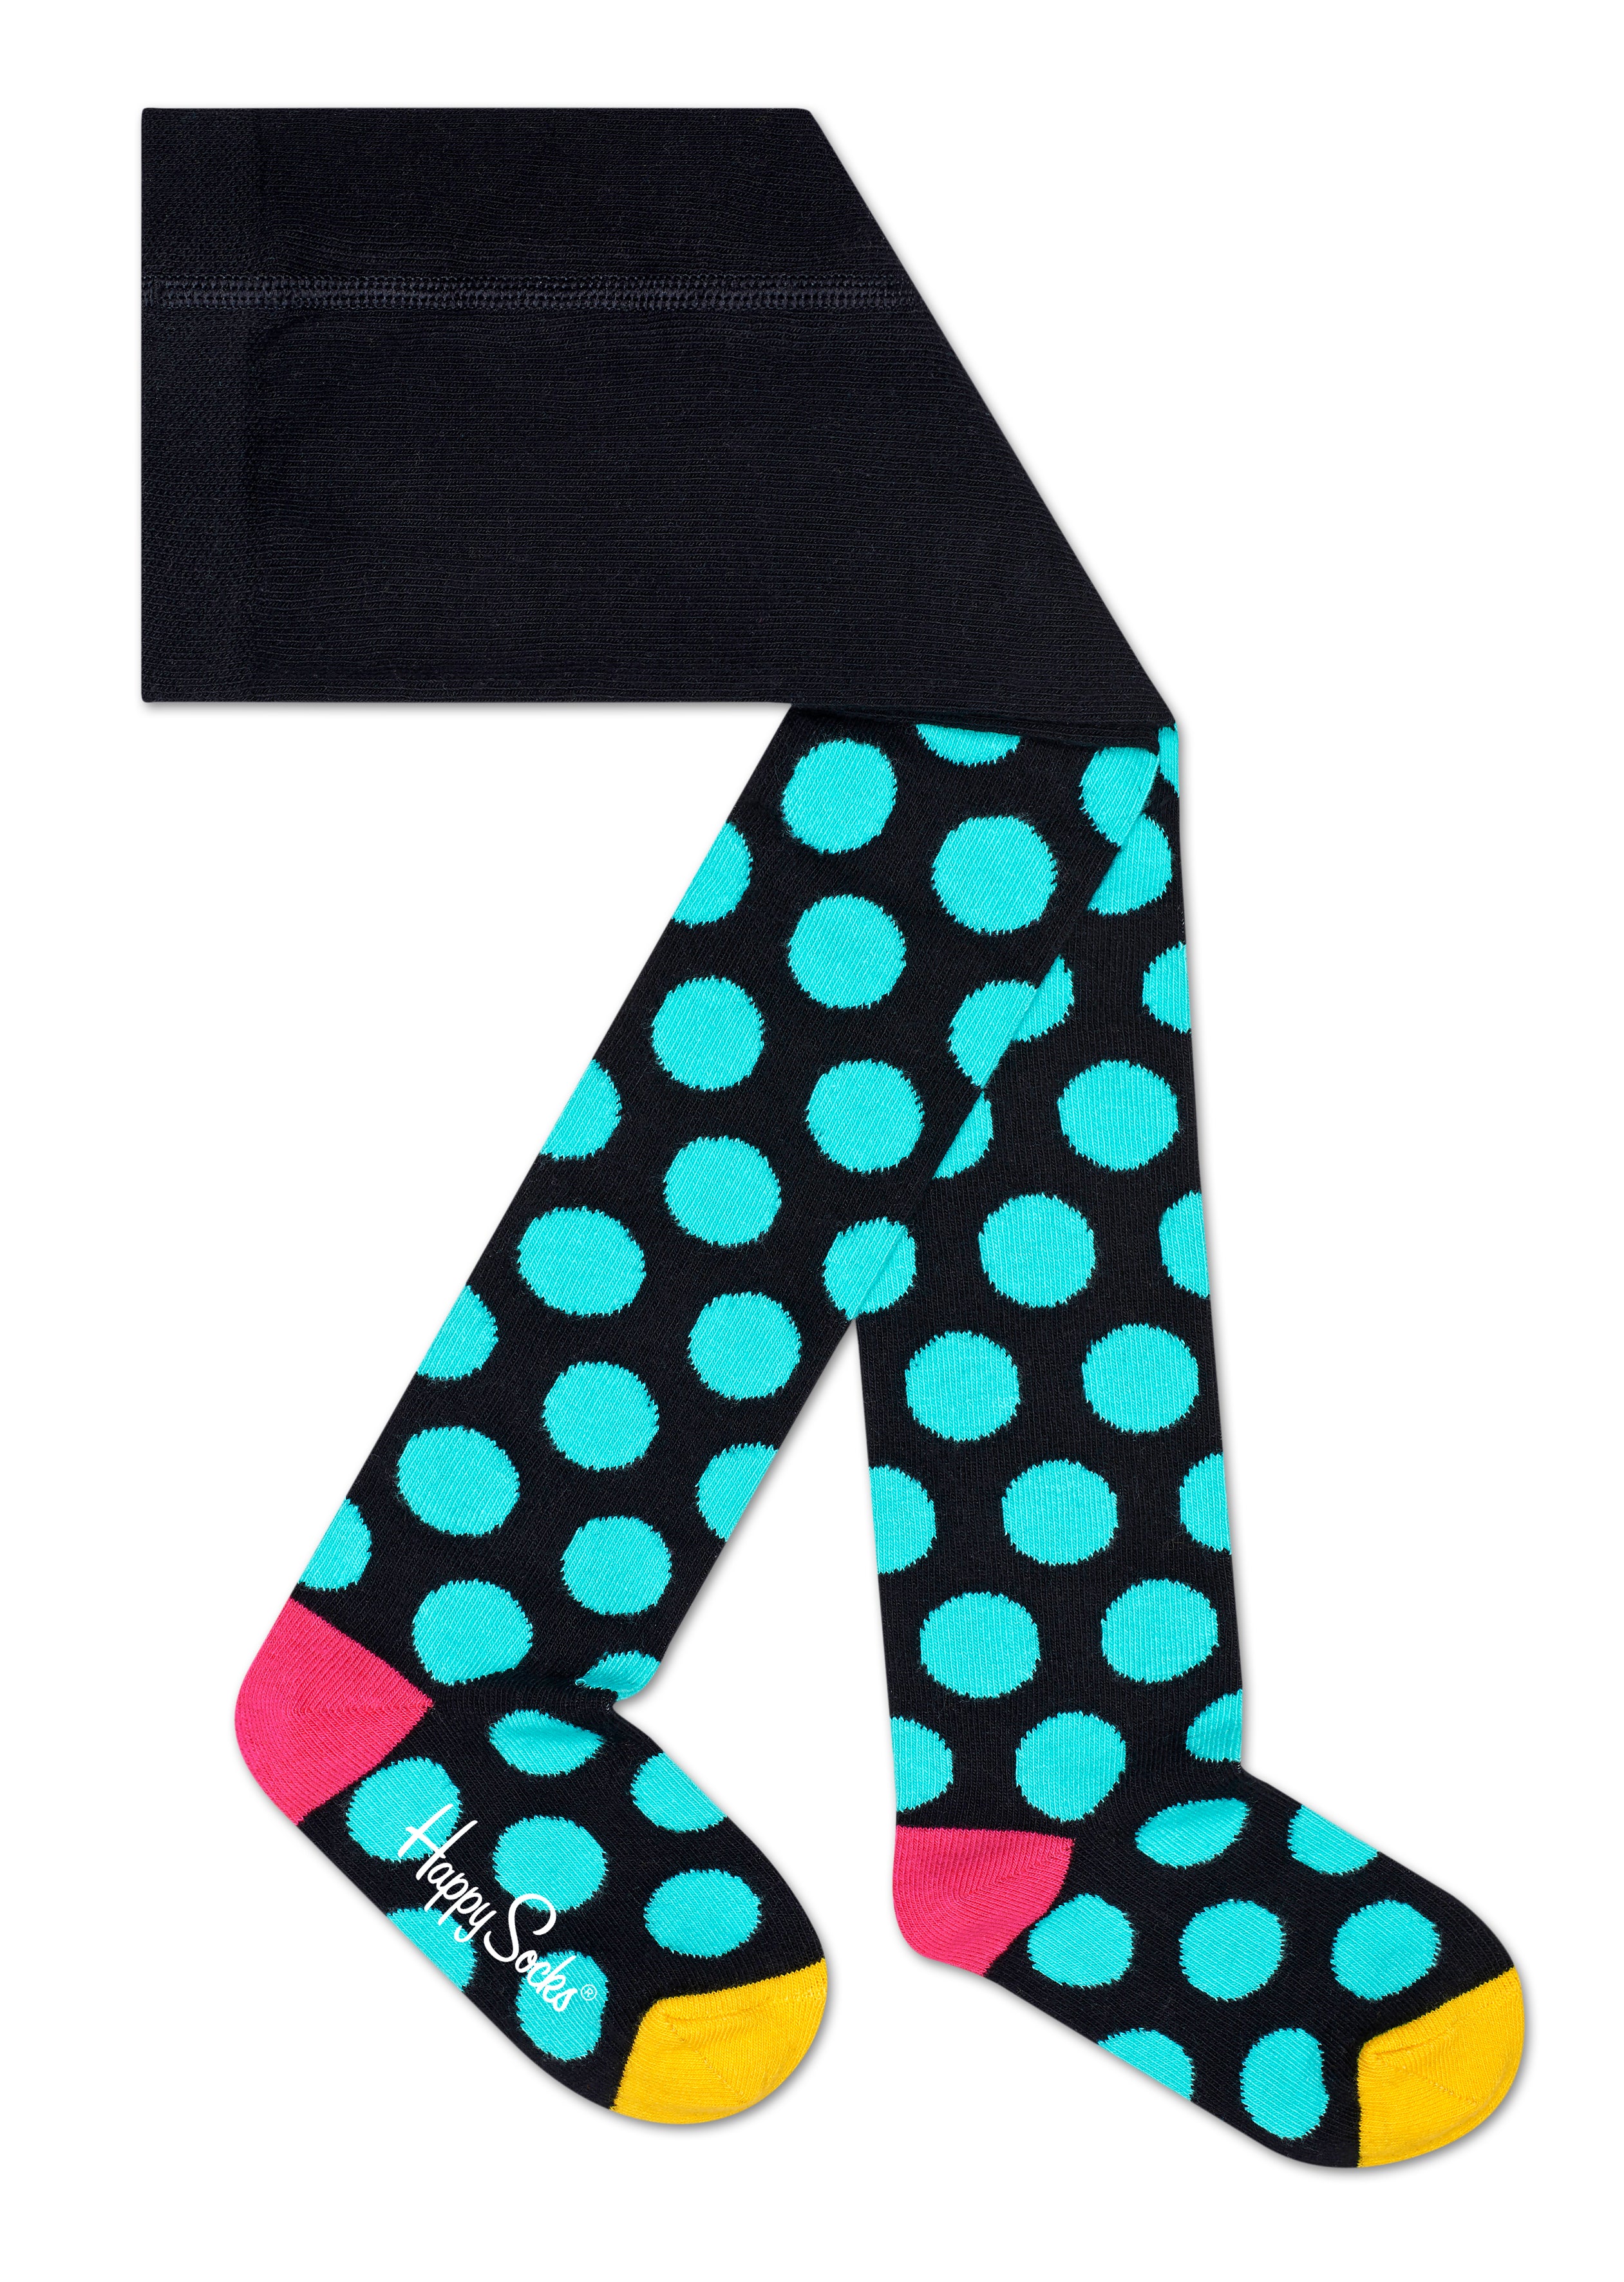 Detské farebné punčochy Happy Socks, vzor Big Dot